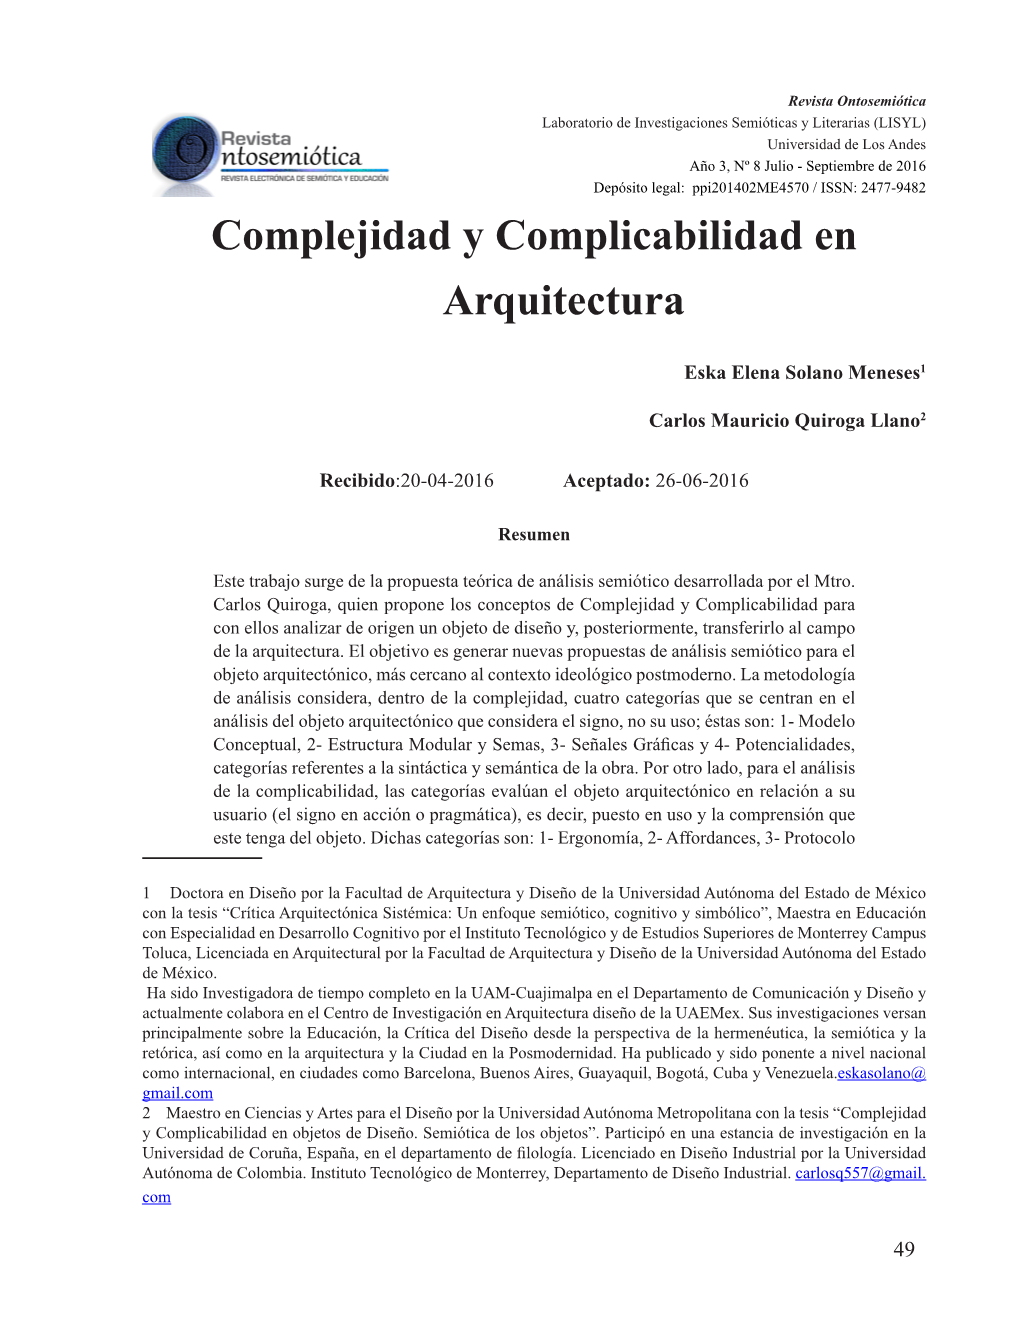 Complejidad Y Complicabilidad En Arquitectura